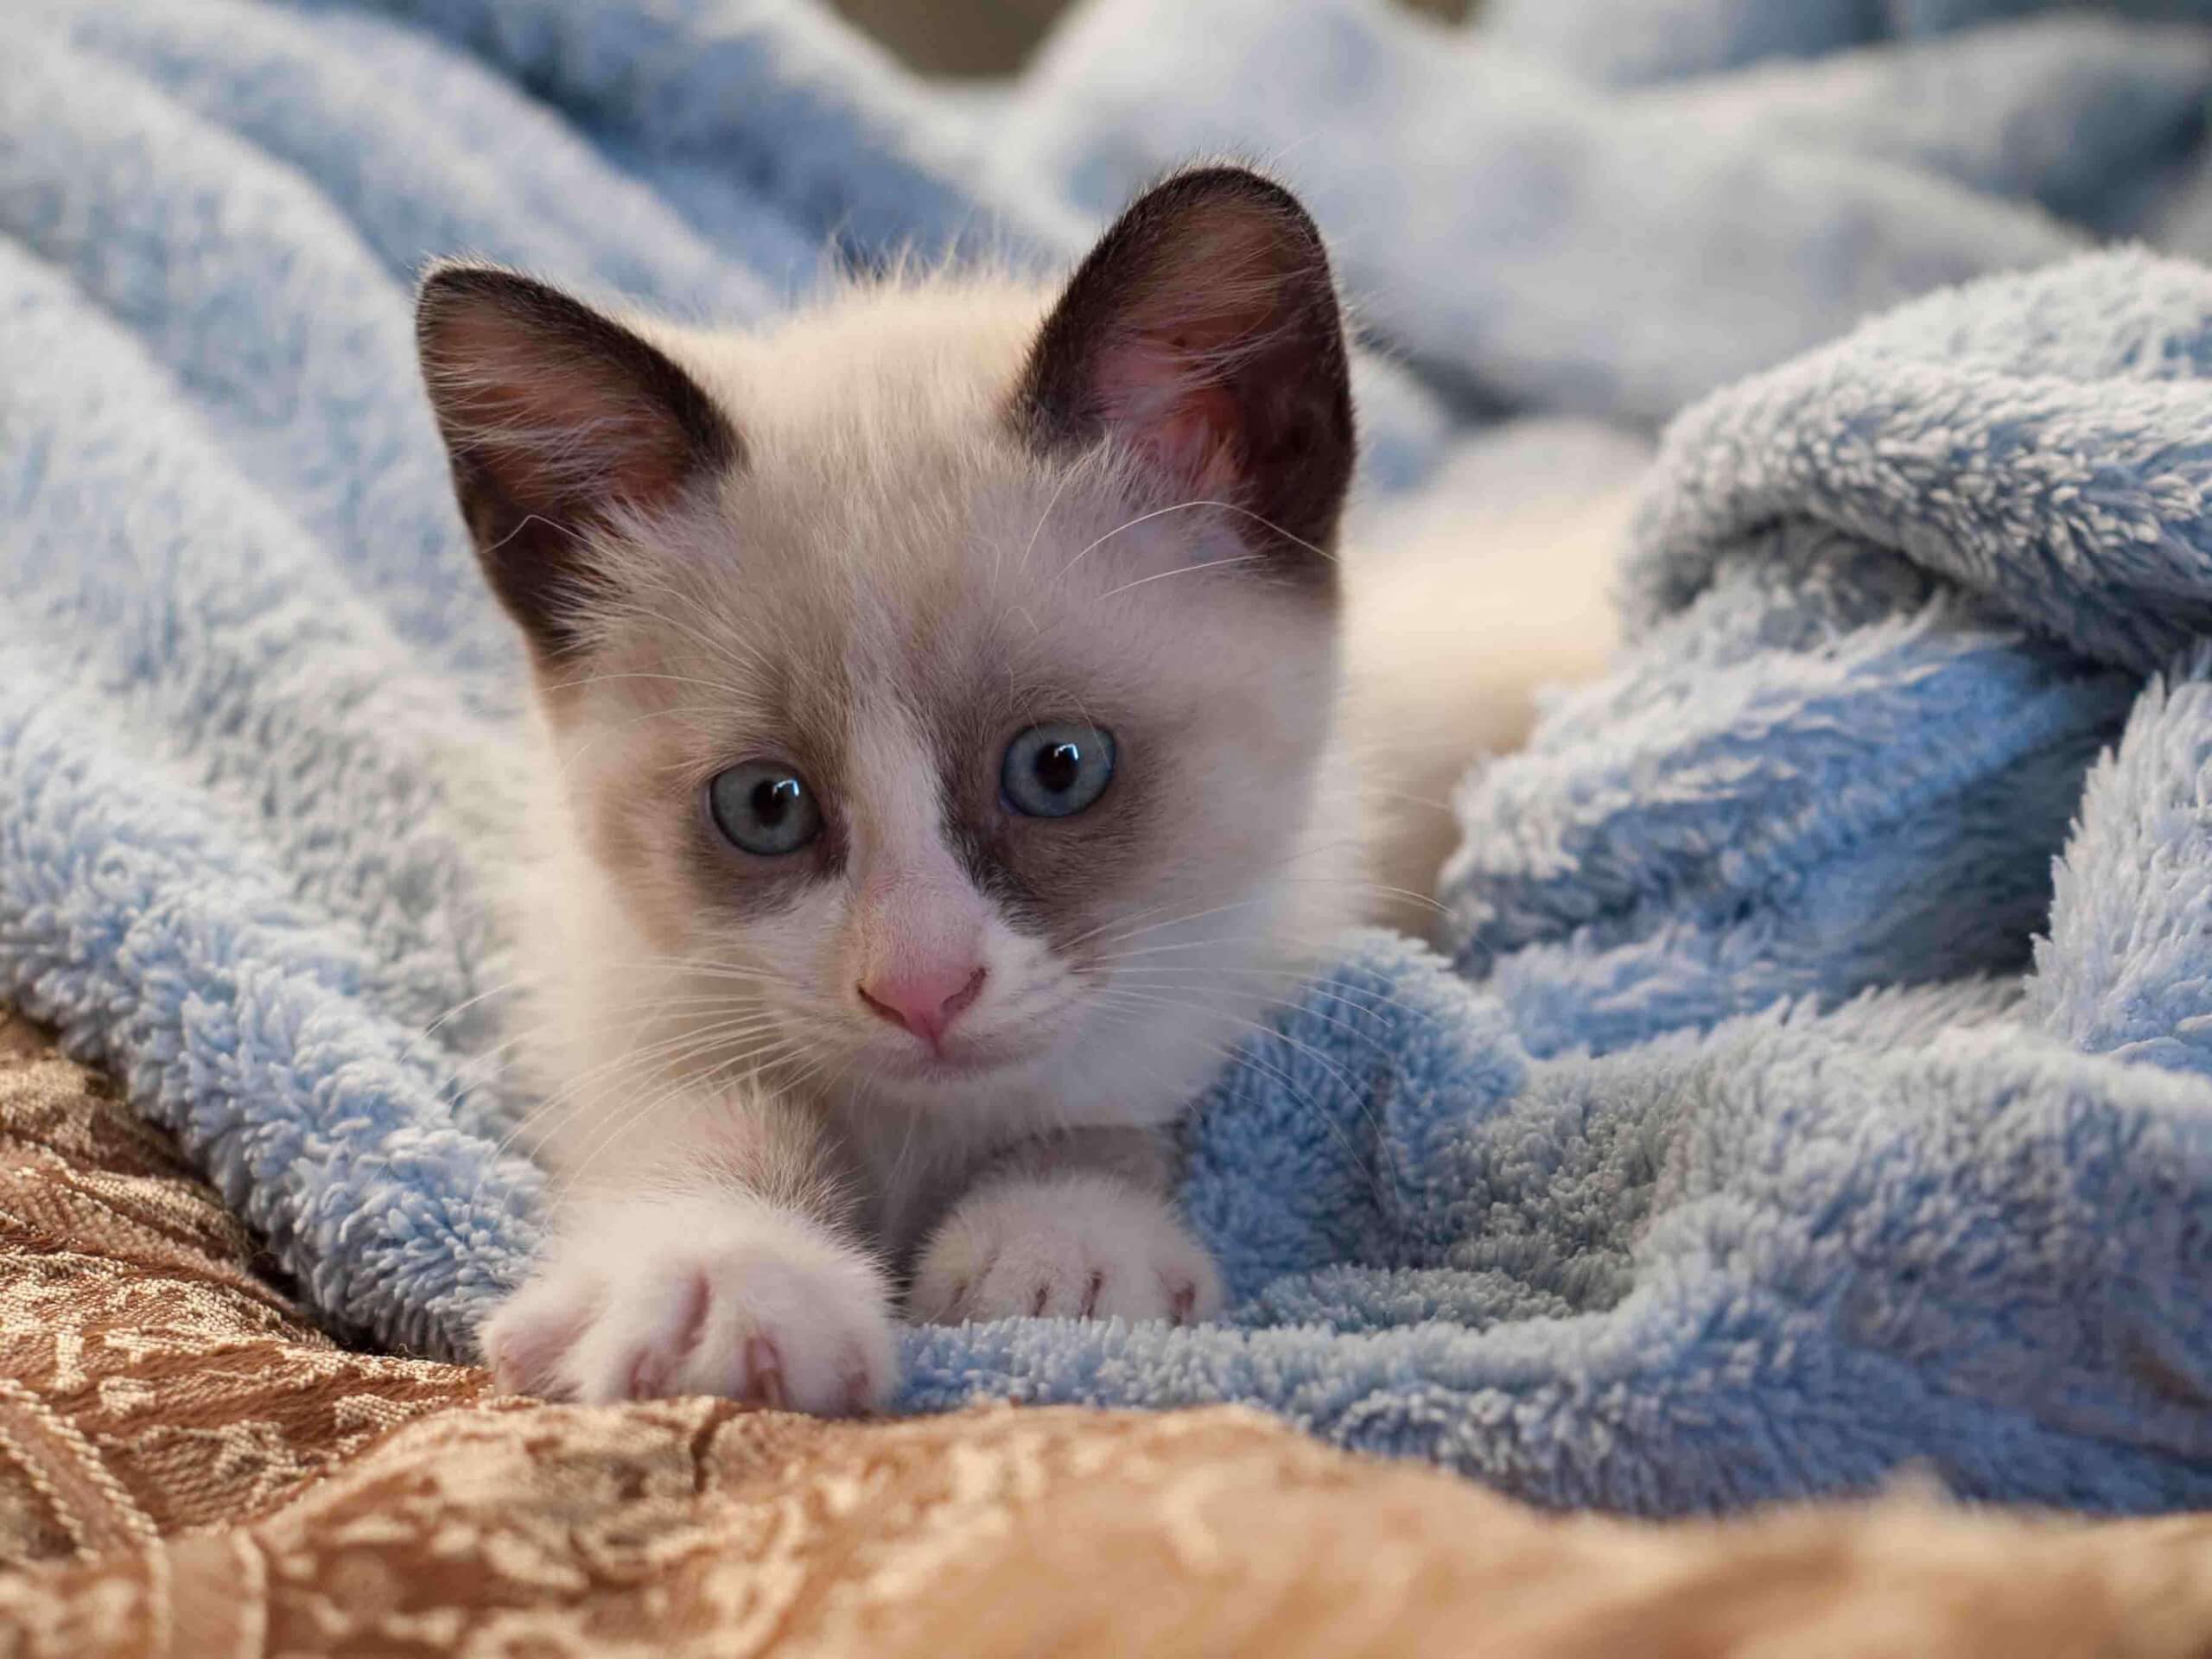 A Snowshoe kitten in a blue blanket.